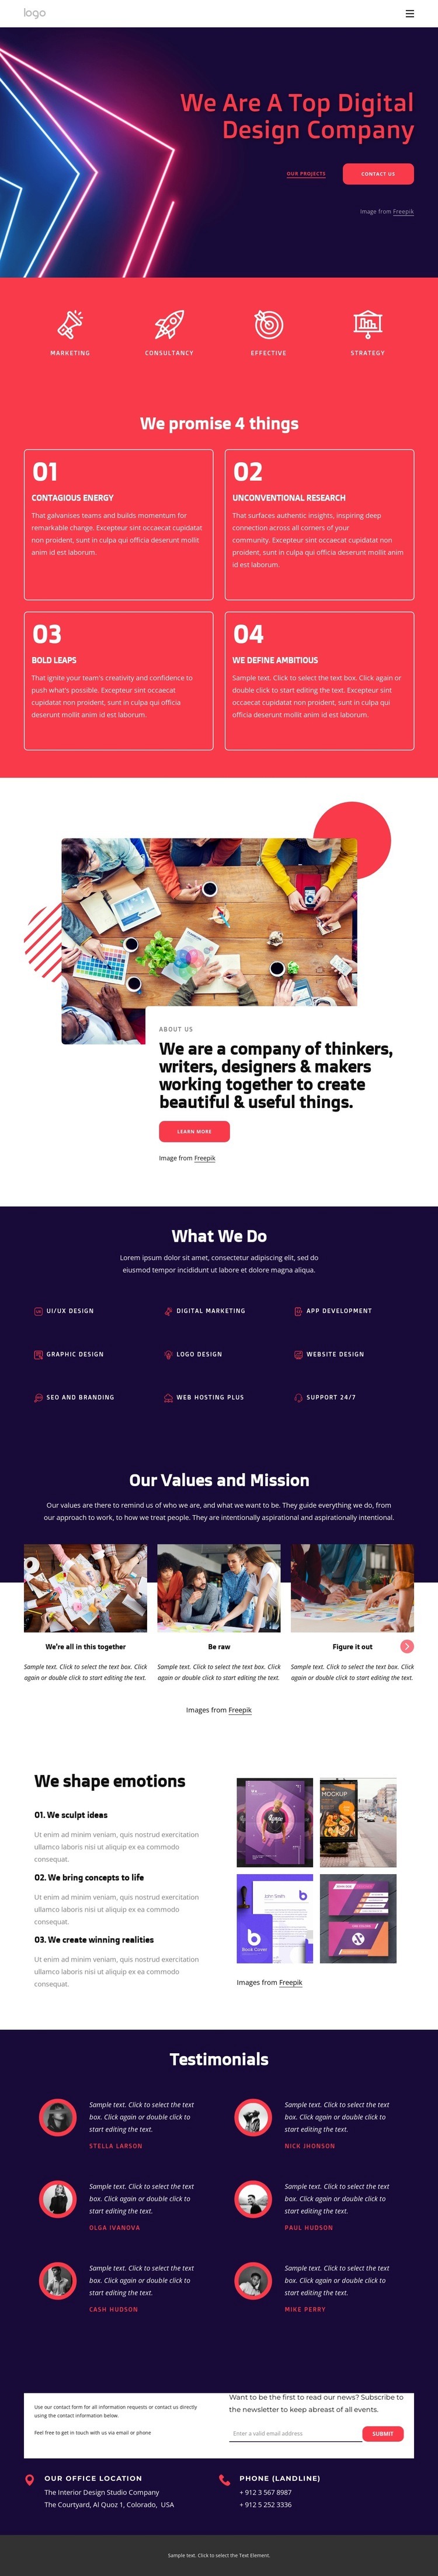 Vi är ett toppföretag inom digital design Html webbplatsbyggare